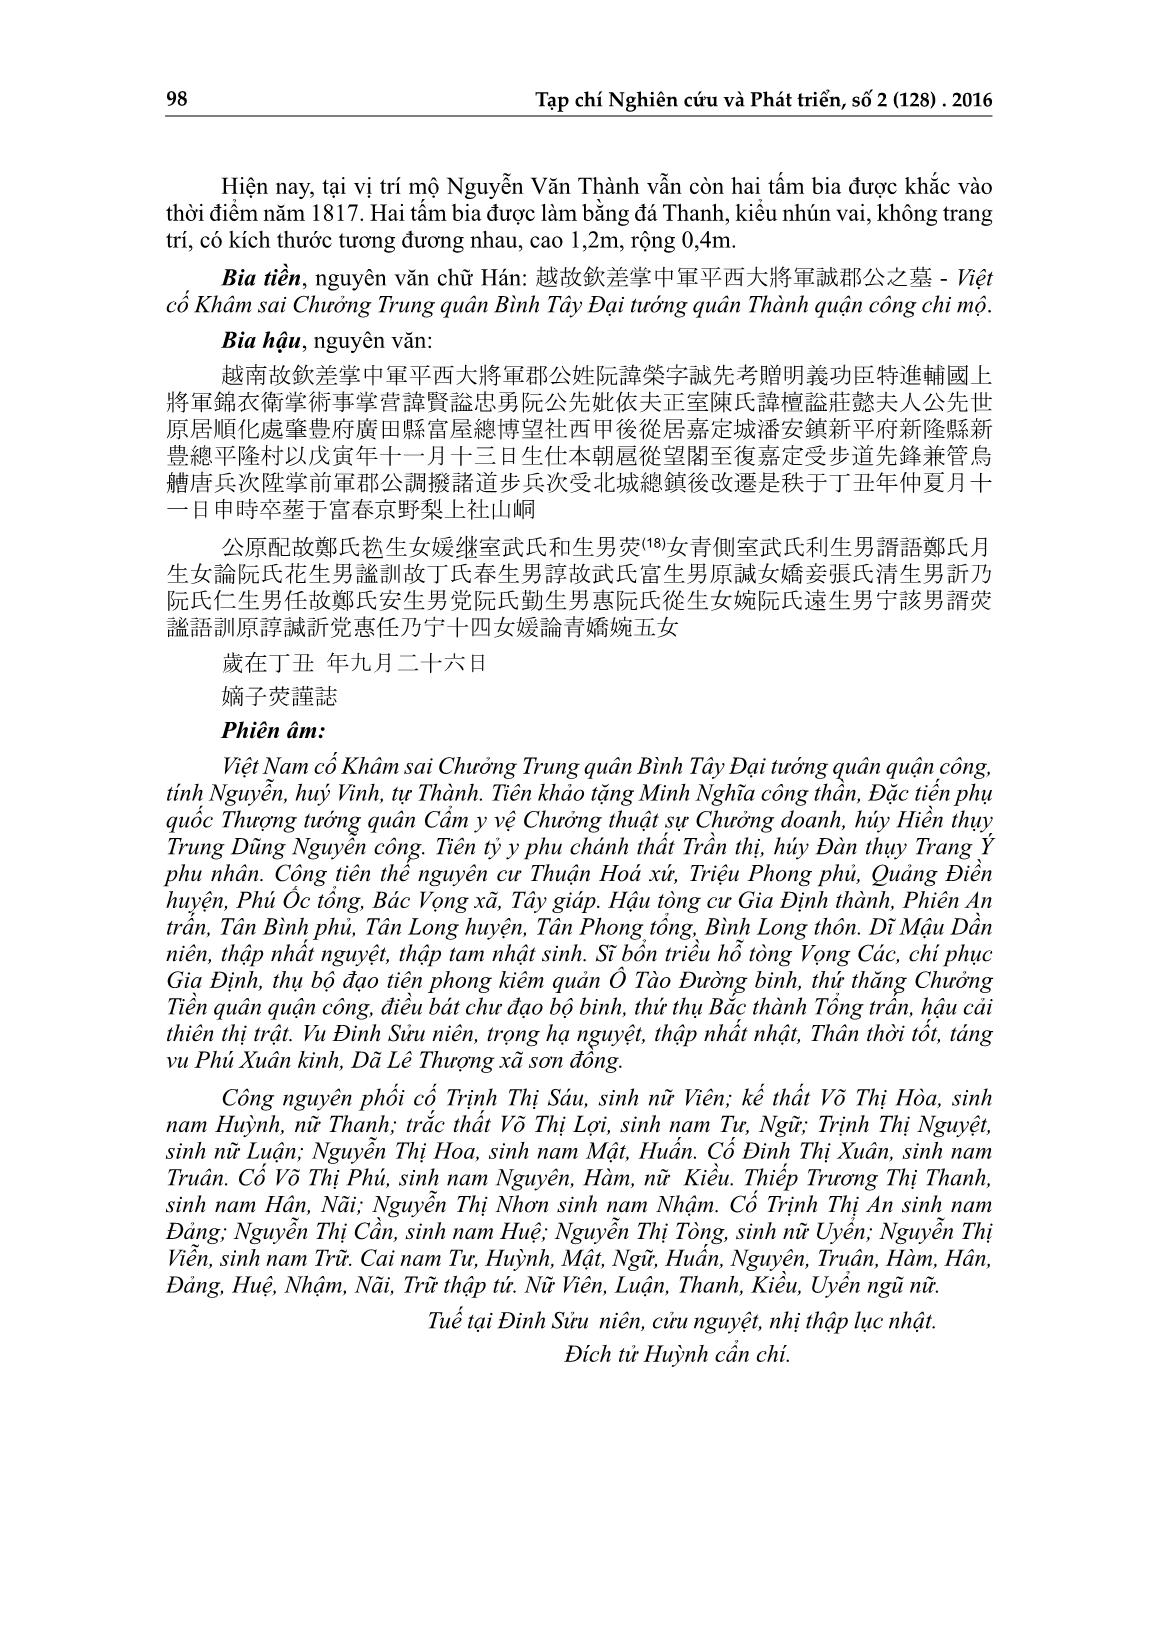 Dấu tích danh nhân Nguyễn Văn Thành trên đất Thừa Thiên Huế trang 4